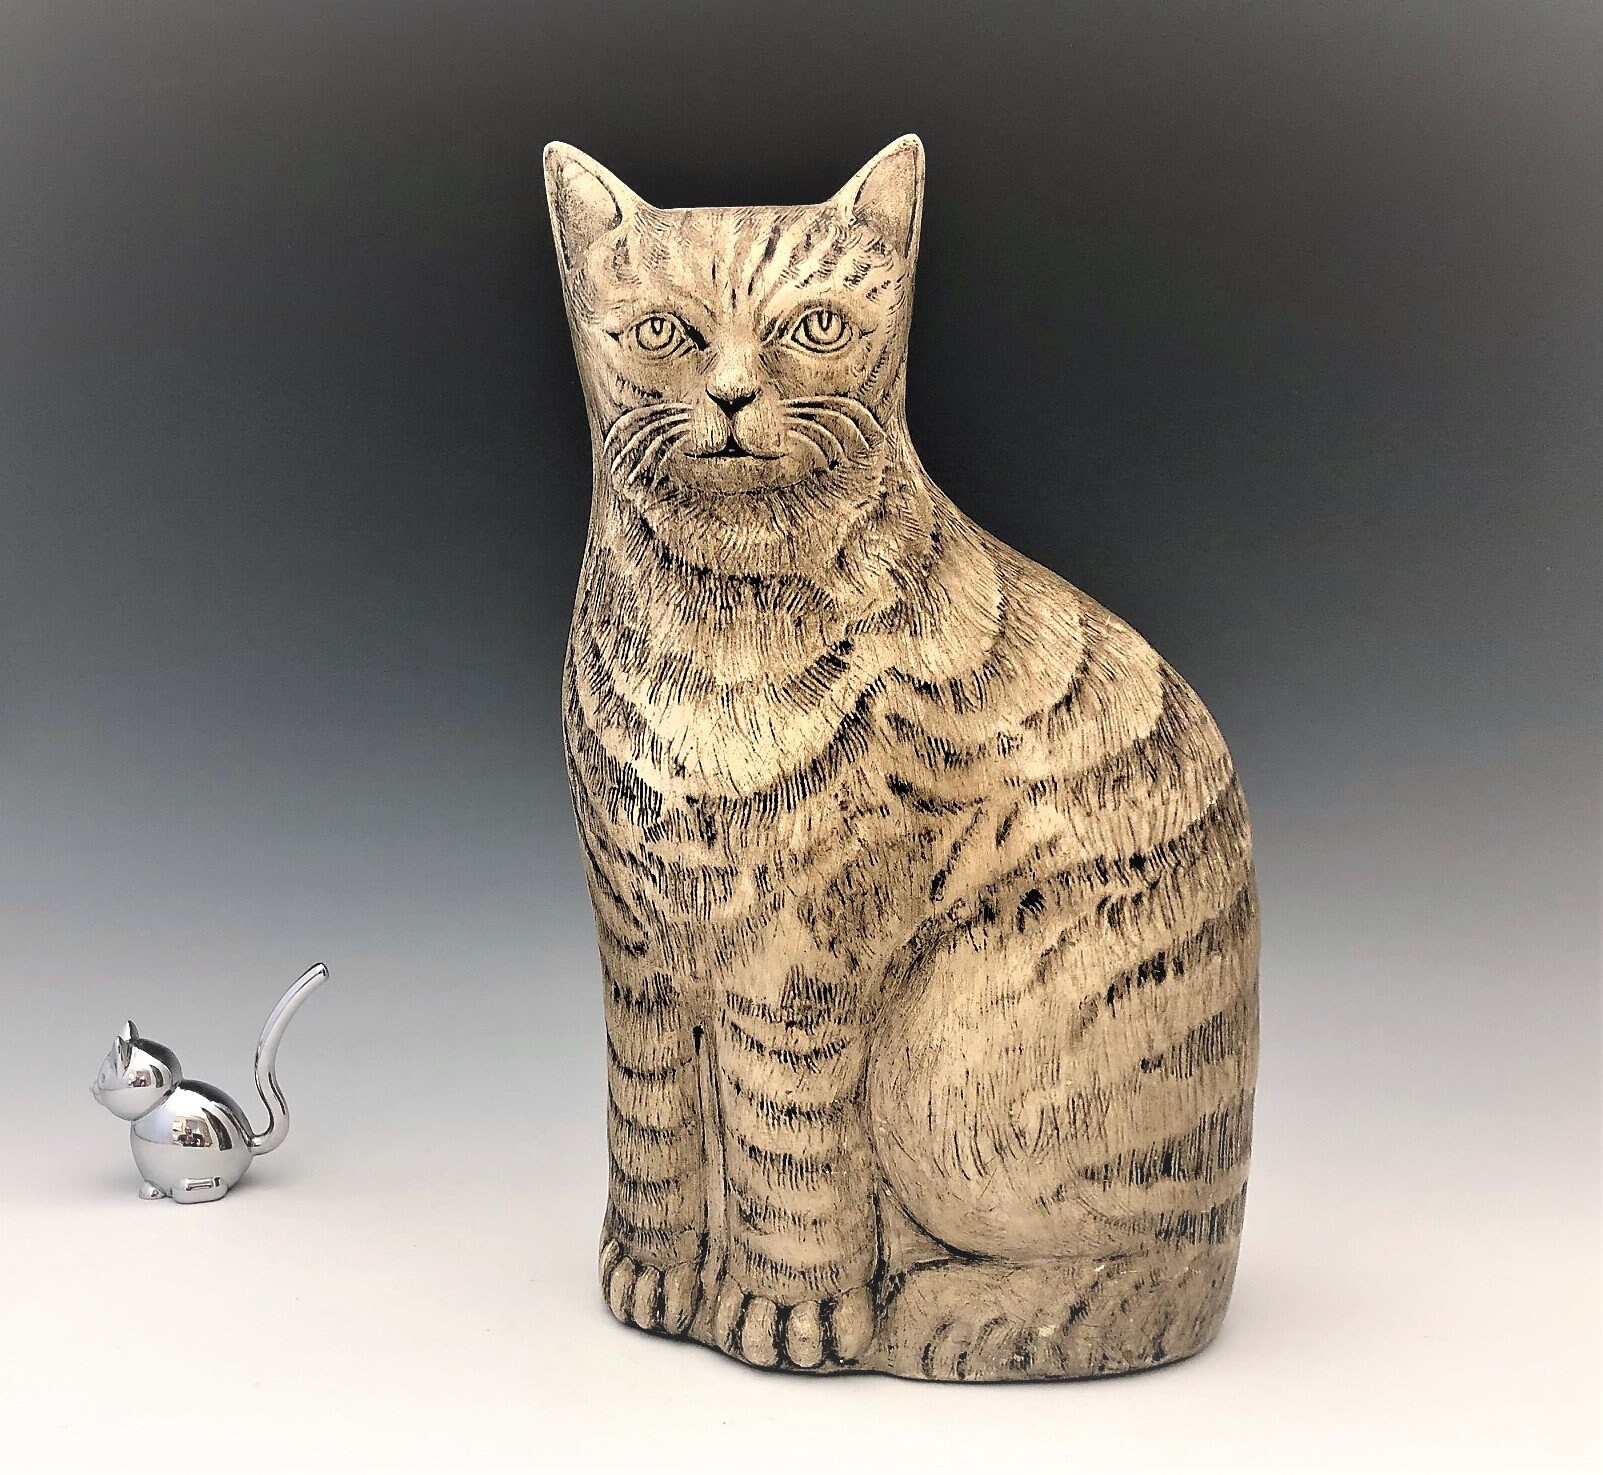  Ceramic  Cat  Statue Ceramic  Tan Striped Cat  Figurine